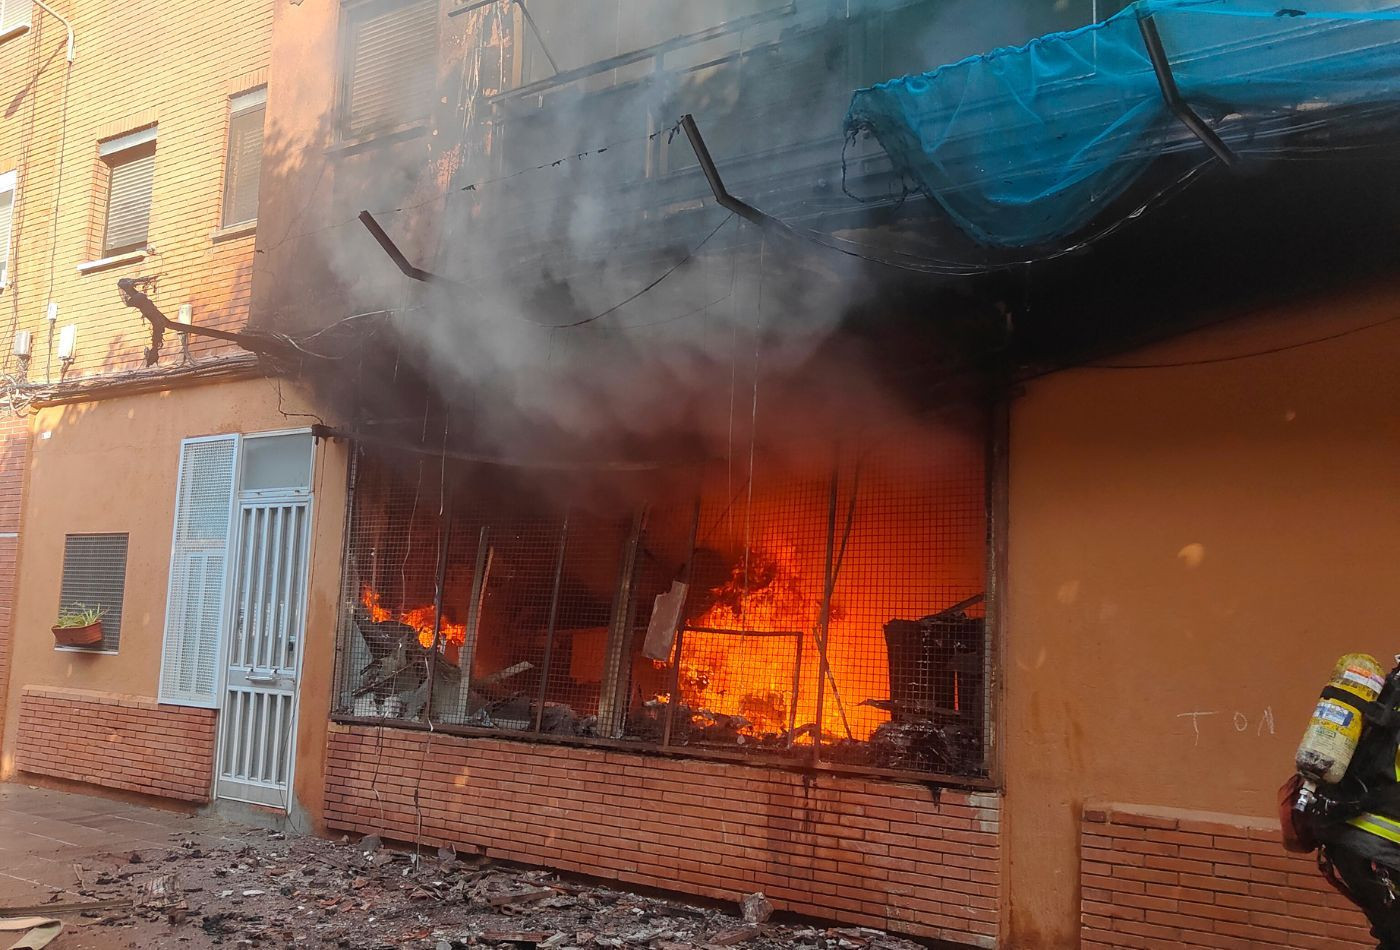 El local incendiado en Sant Adrià de Besòs este domingo / BOMBERS